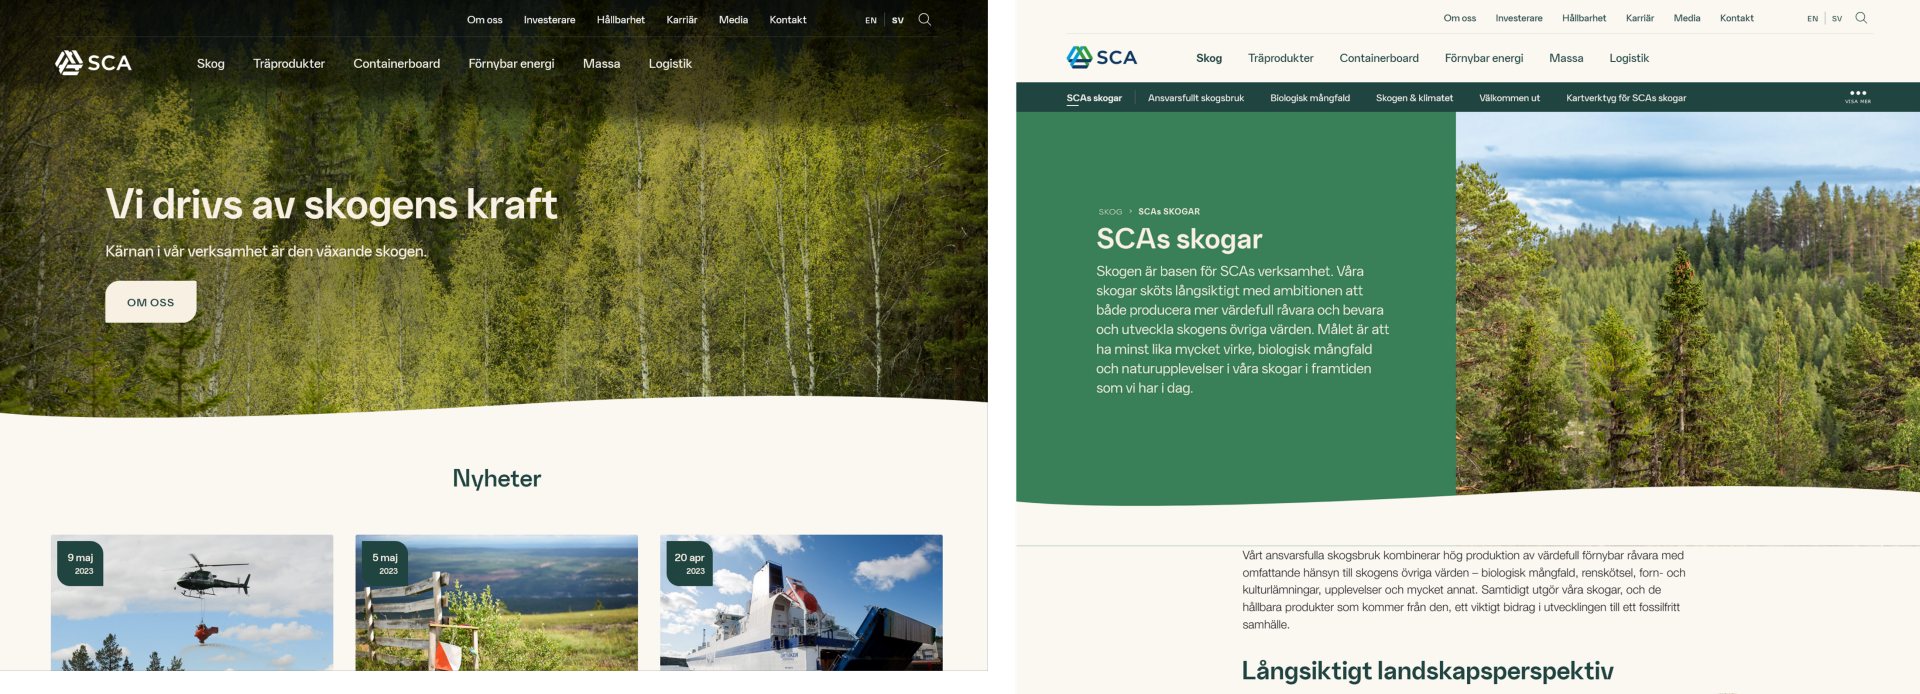 Två bilder över den översta bildsektionen på sca.coms startsida och Skog-sidan, som utvisas som exempel för hur denna yta ska se ut för desktop-användare.